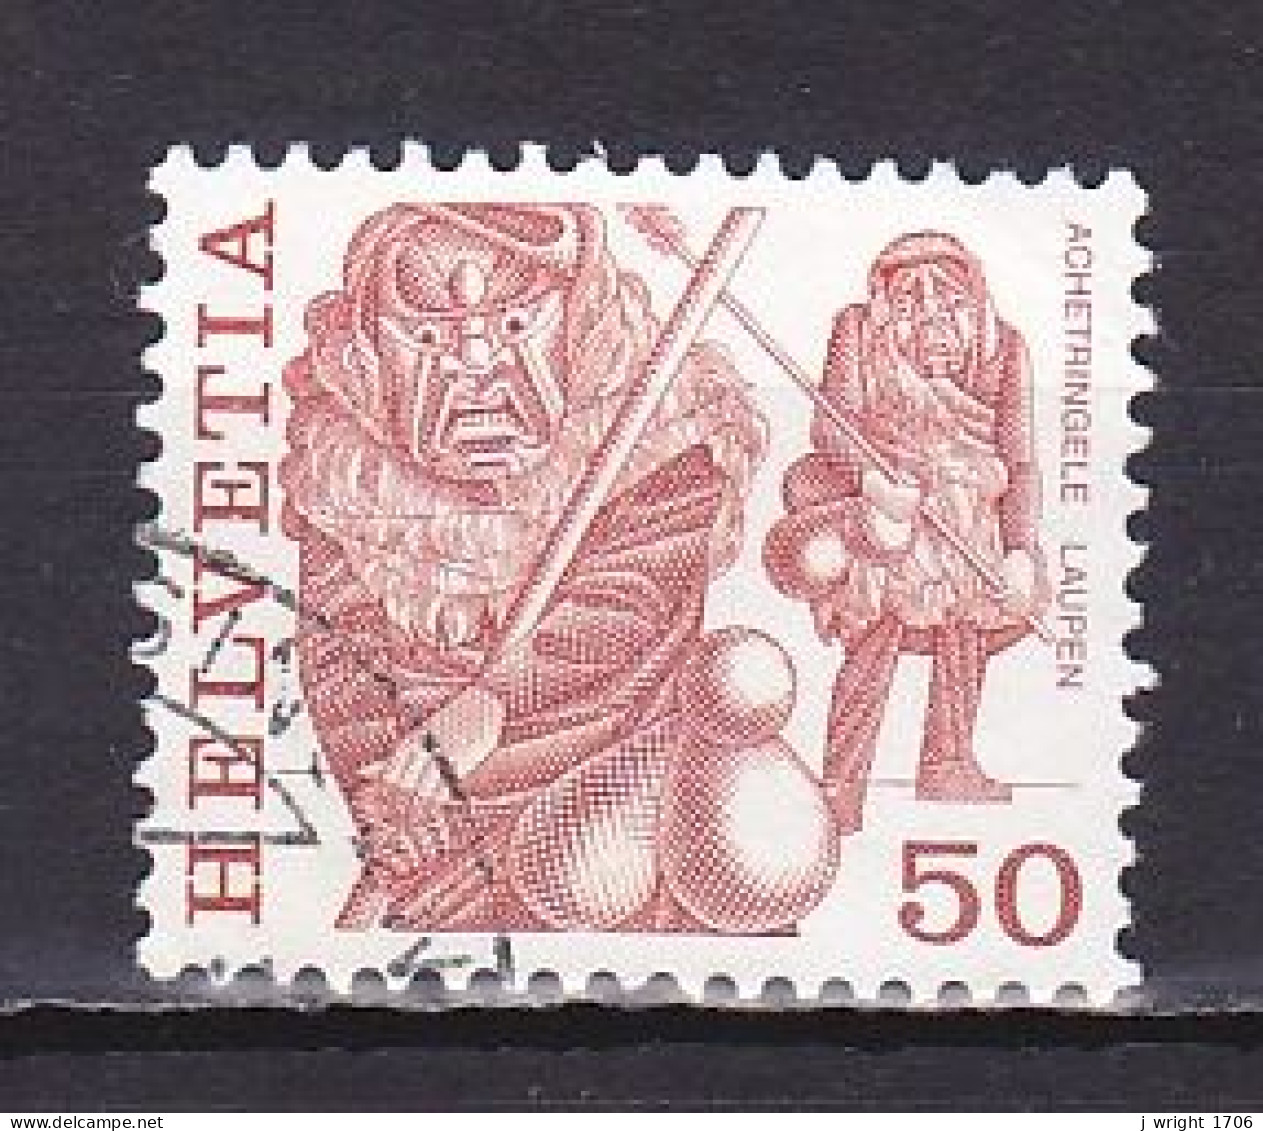 Switzerland, 1977, Folk Customs/Achetringele Laupen, 50c, USED - Used Stamps